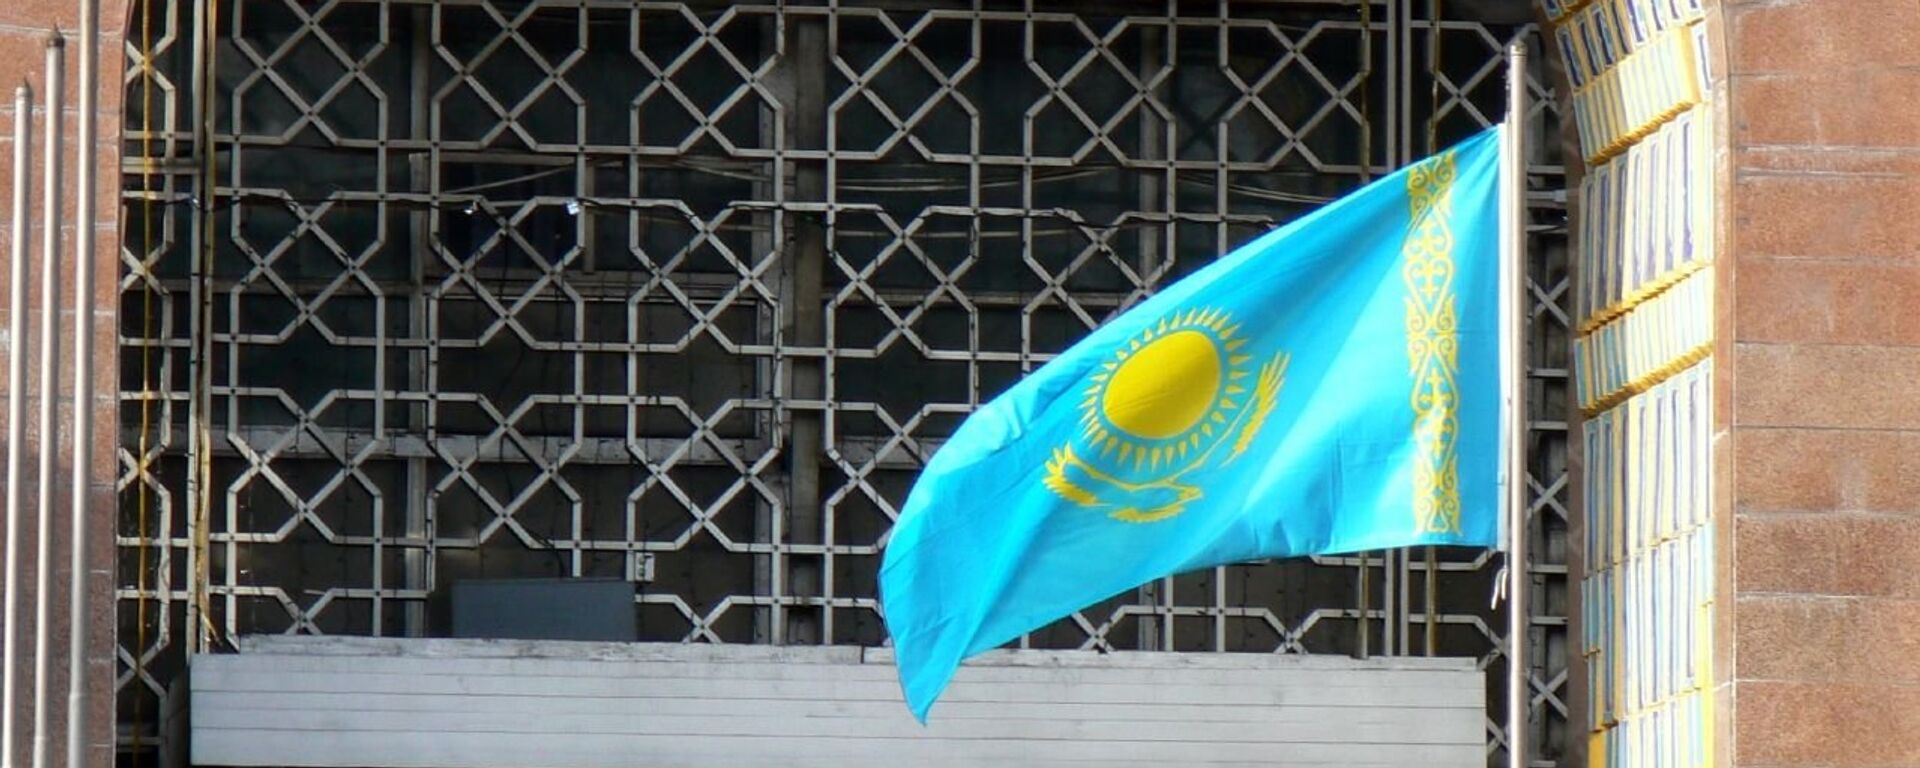 Bandera de Kazajistán - Sputnik Mundo, 1920, 29.12.2020